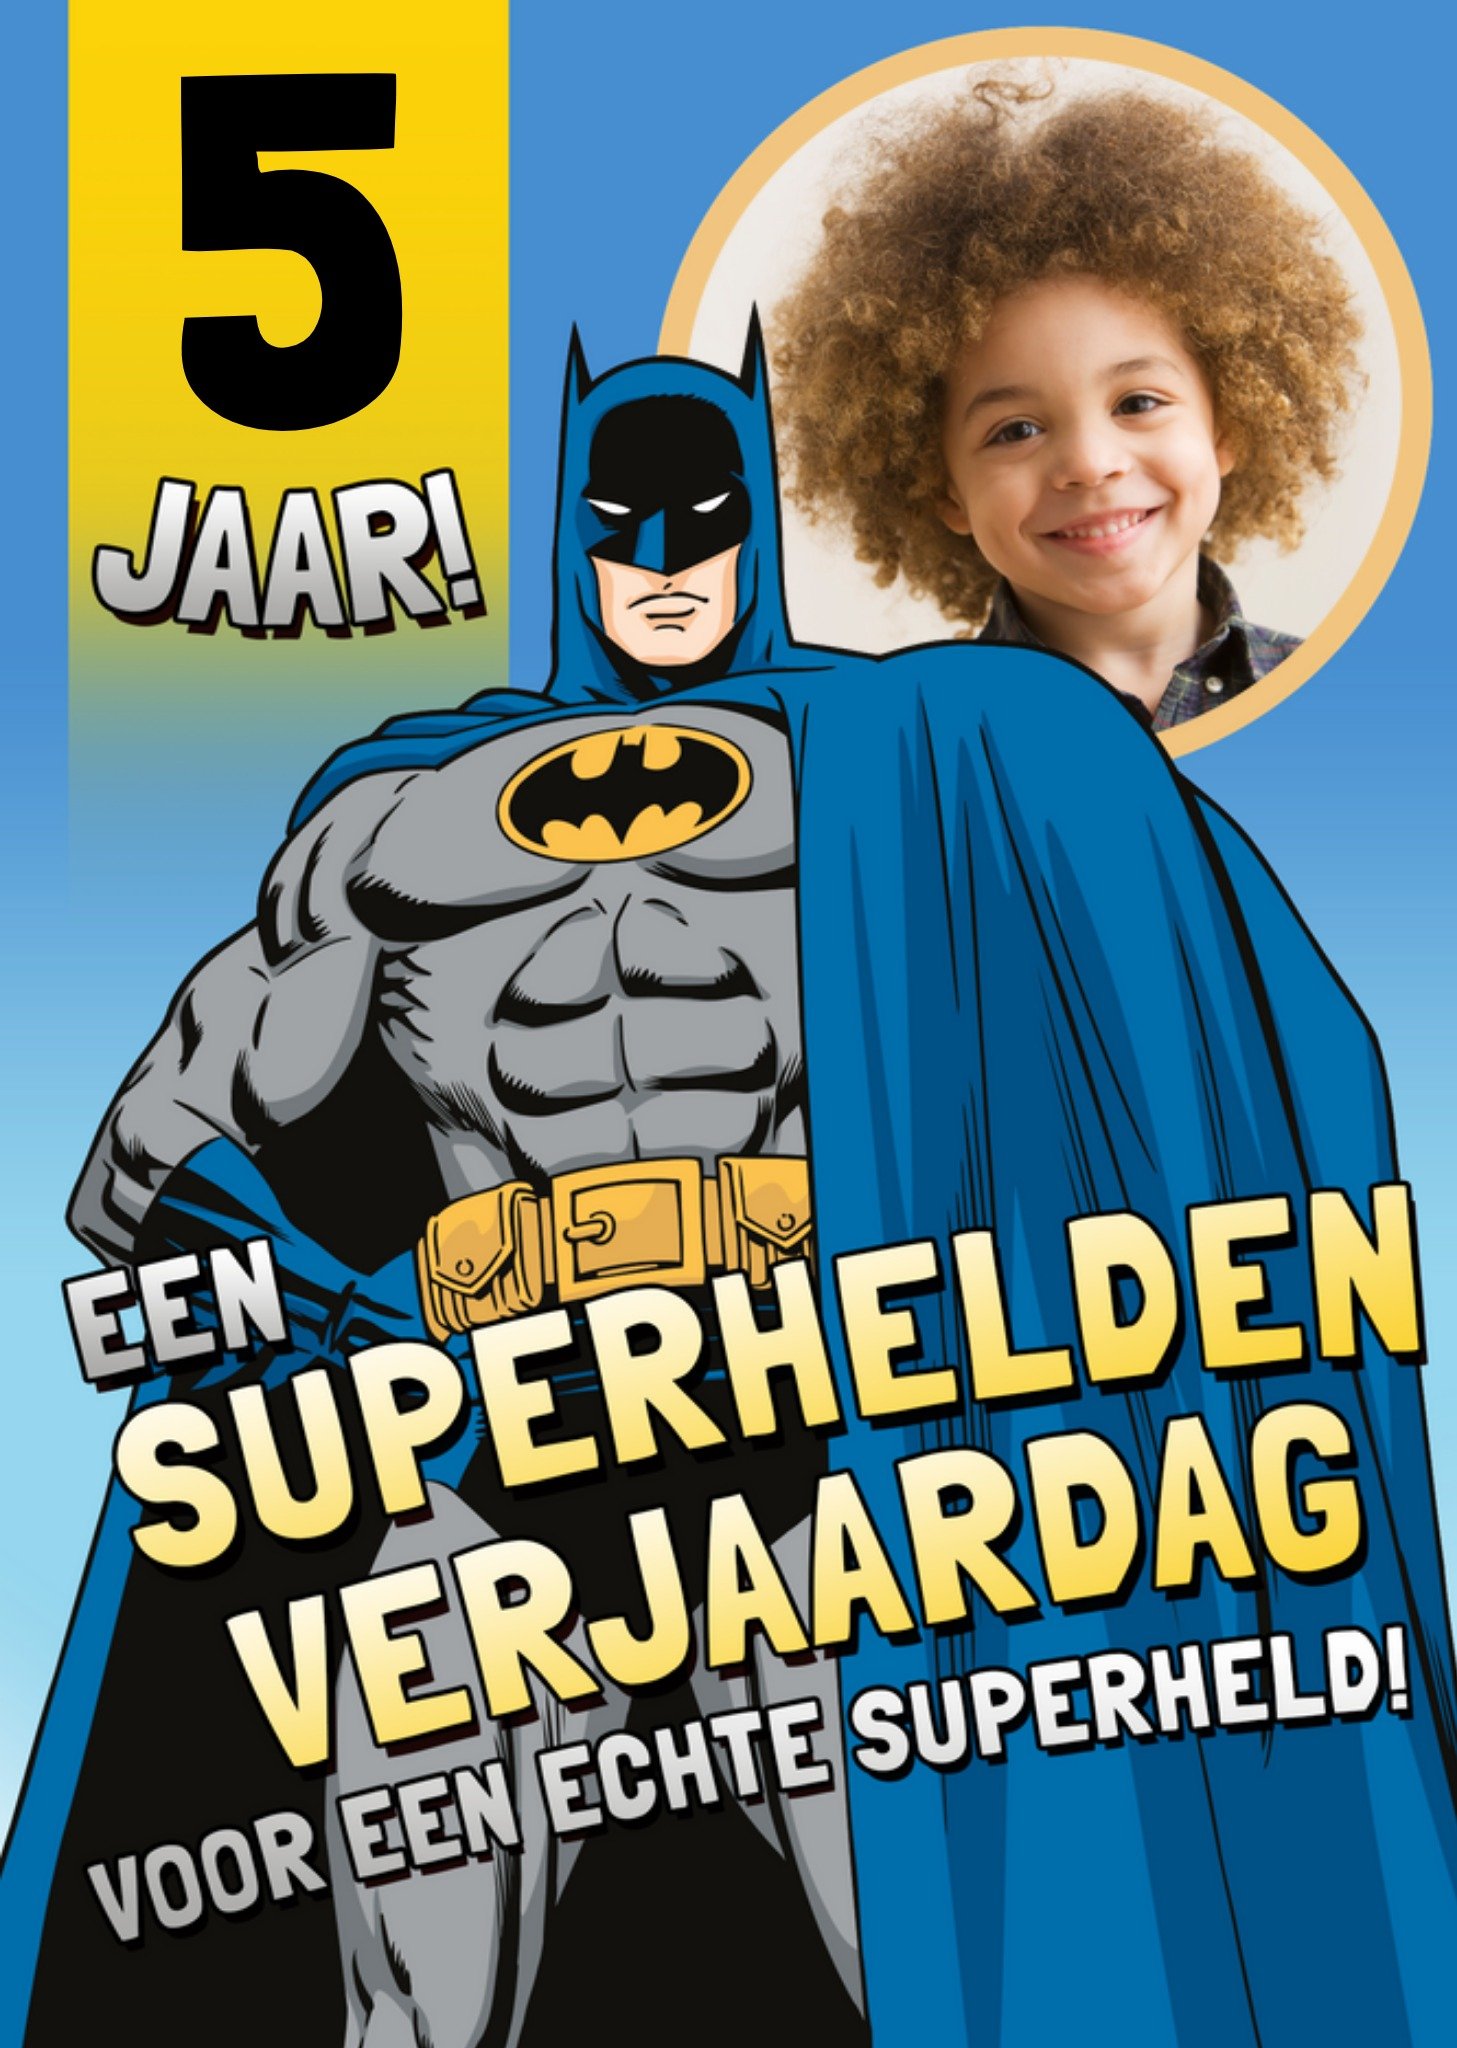 Warner Bros - Verjaardagskaart - Superheld